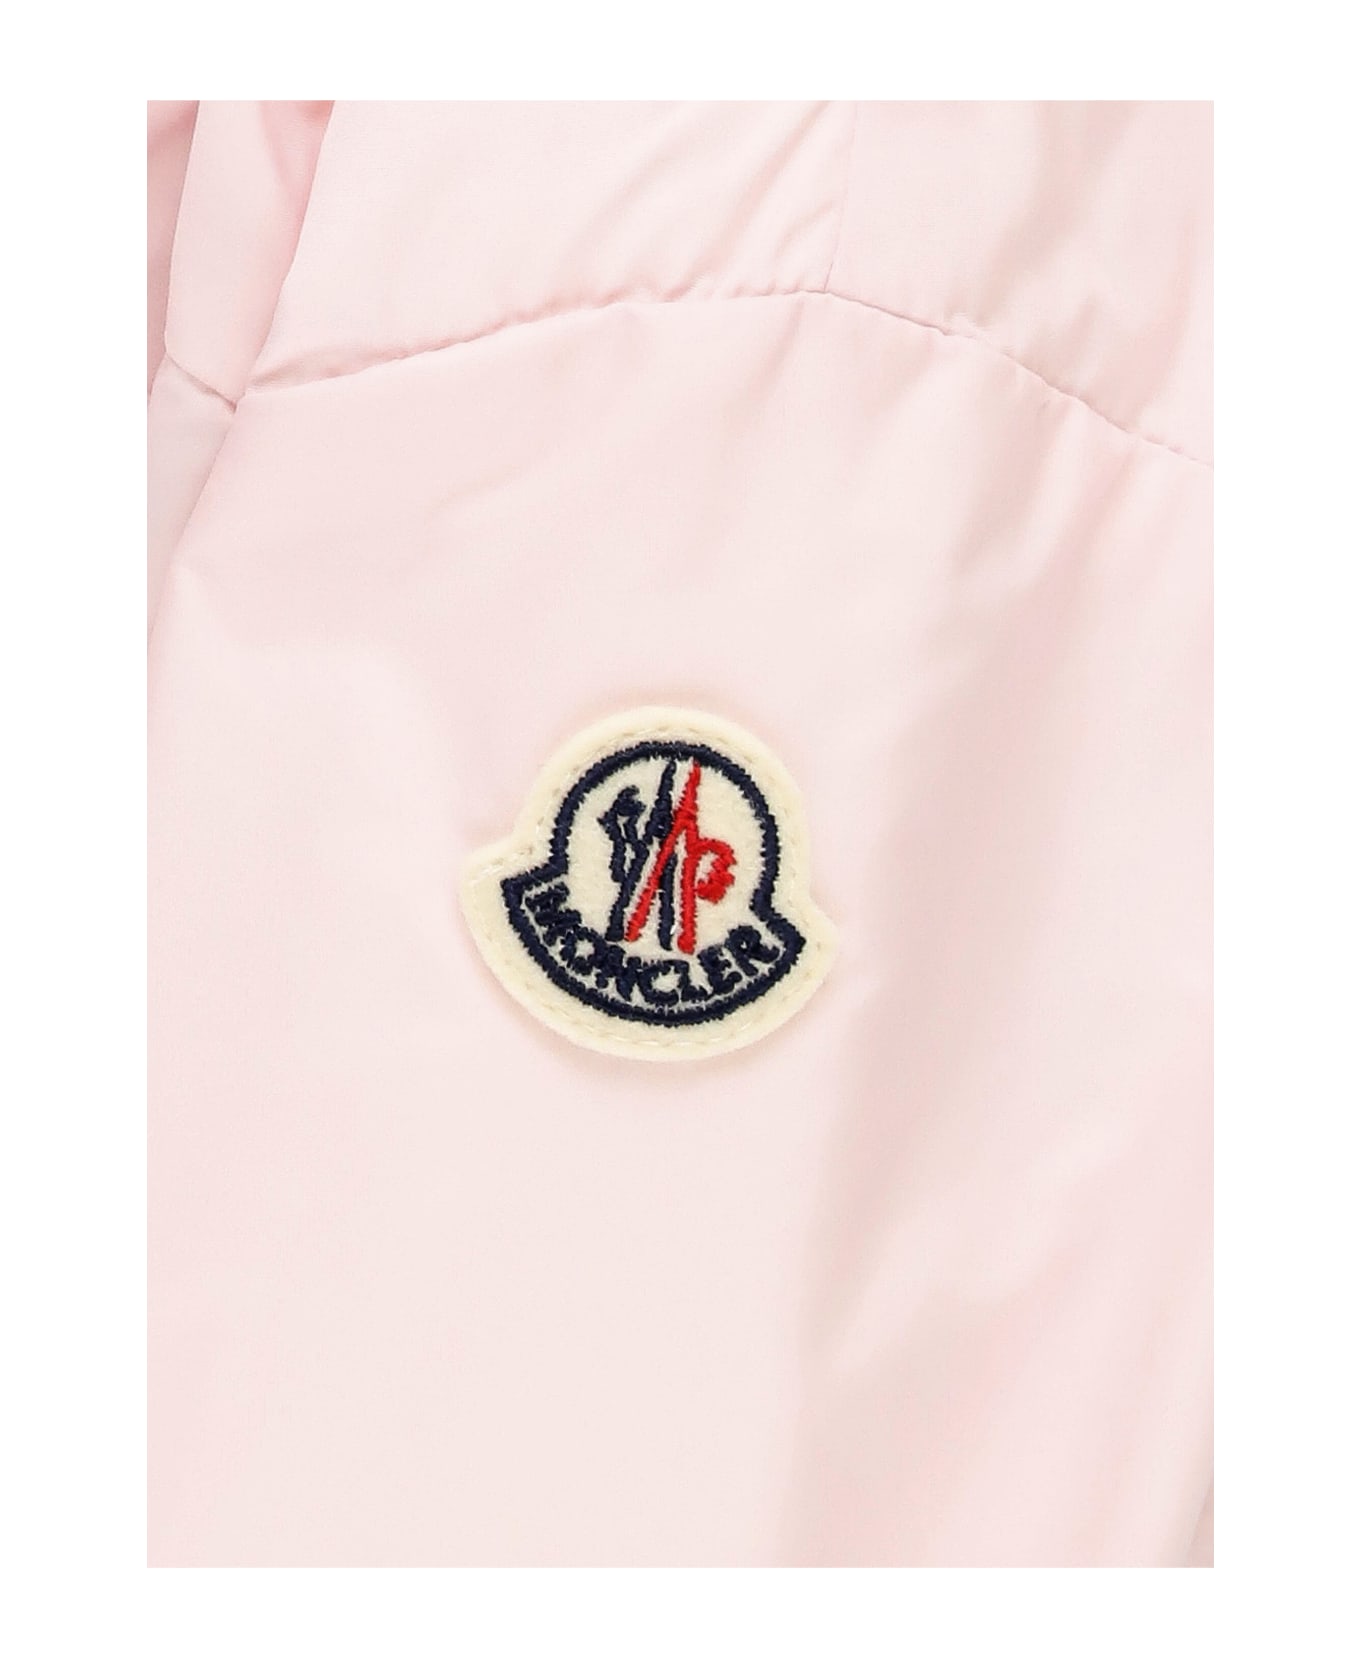 Moncler Raka Jacket - Pink コート＆ジャケット